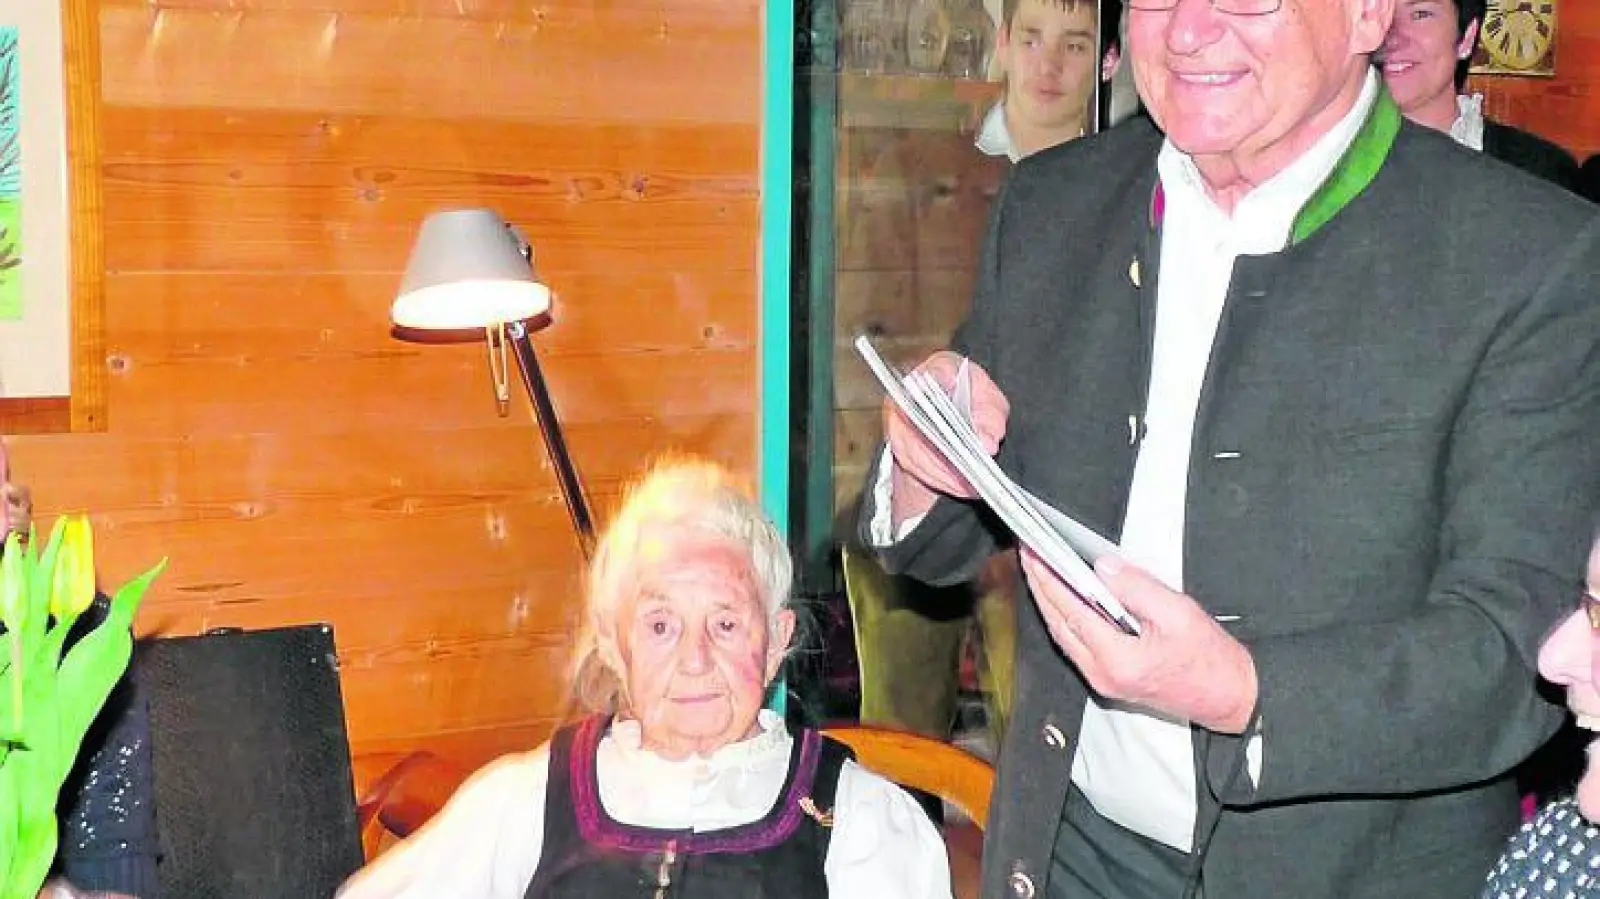 &lt;p&gt; &lt;x_bildunterschr&gt; &lt;b&gt;Ganz besonders &lt;/b&gt; freute sich Hermann Well darüber, dass ihm auch seine 93 Jahre alte Mutter mit der Zither ein Geburtstagsständchen zum 70. spielte.   Foto: Gisela Huber &lt;/x_bildunterschr&gt; &lt;/p&gt;